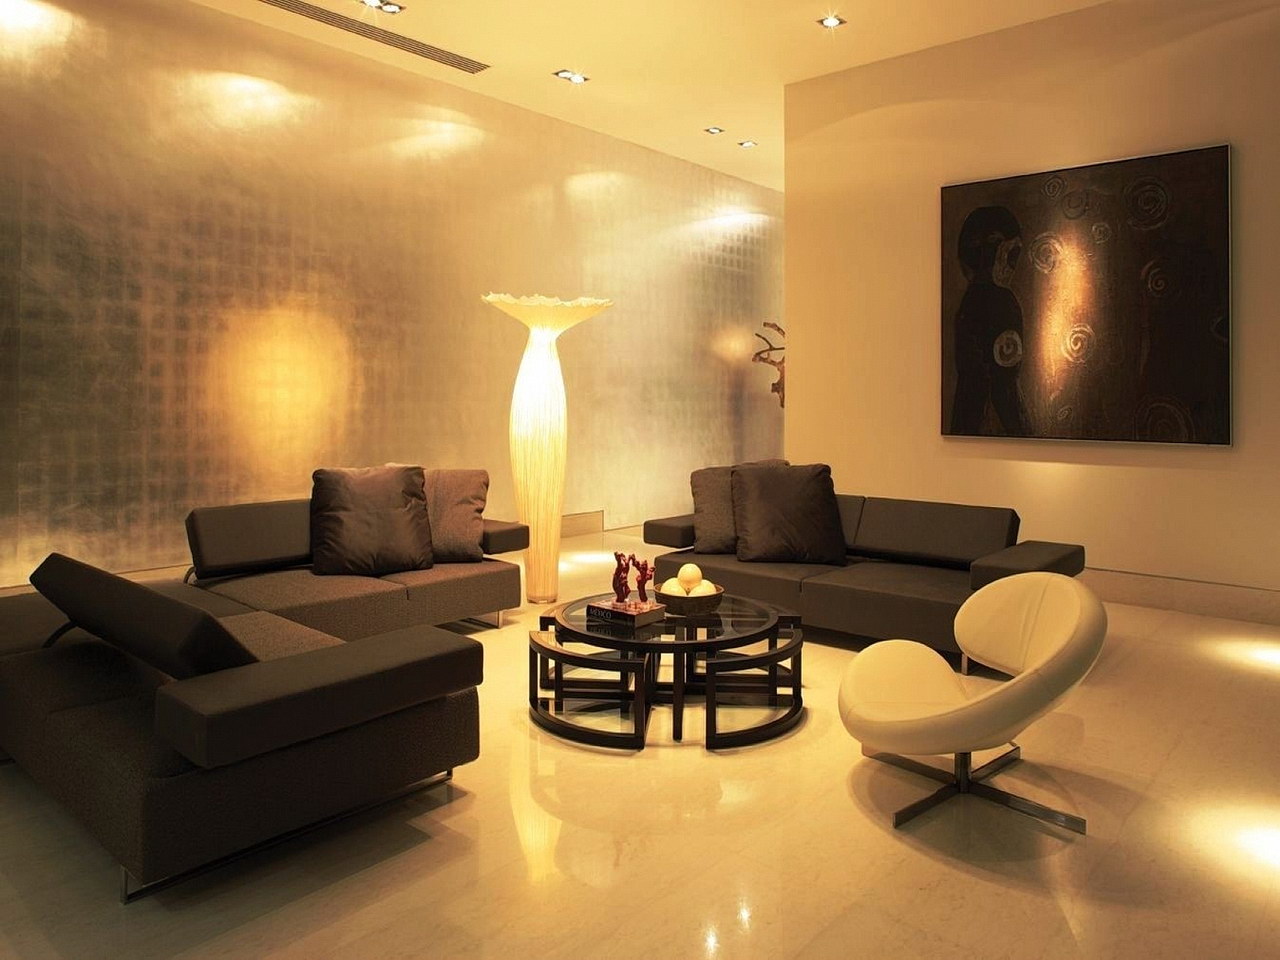 standard lighting for living room